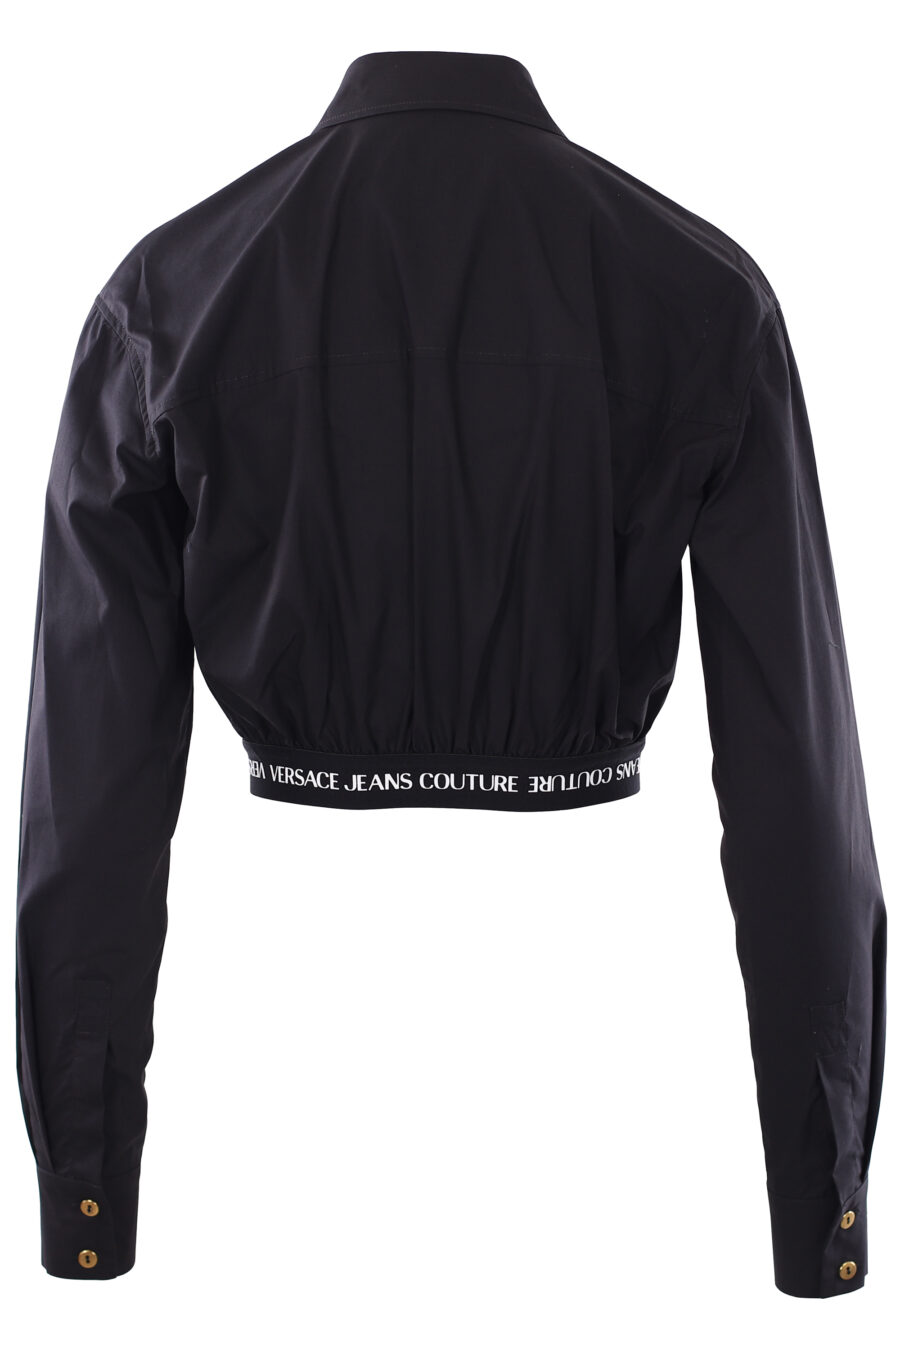 Camisa preta de manga comprida cortada com logótipo de fita - IMG 0278